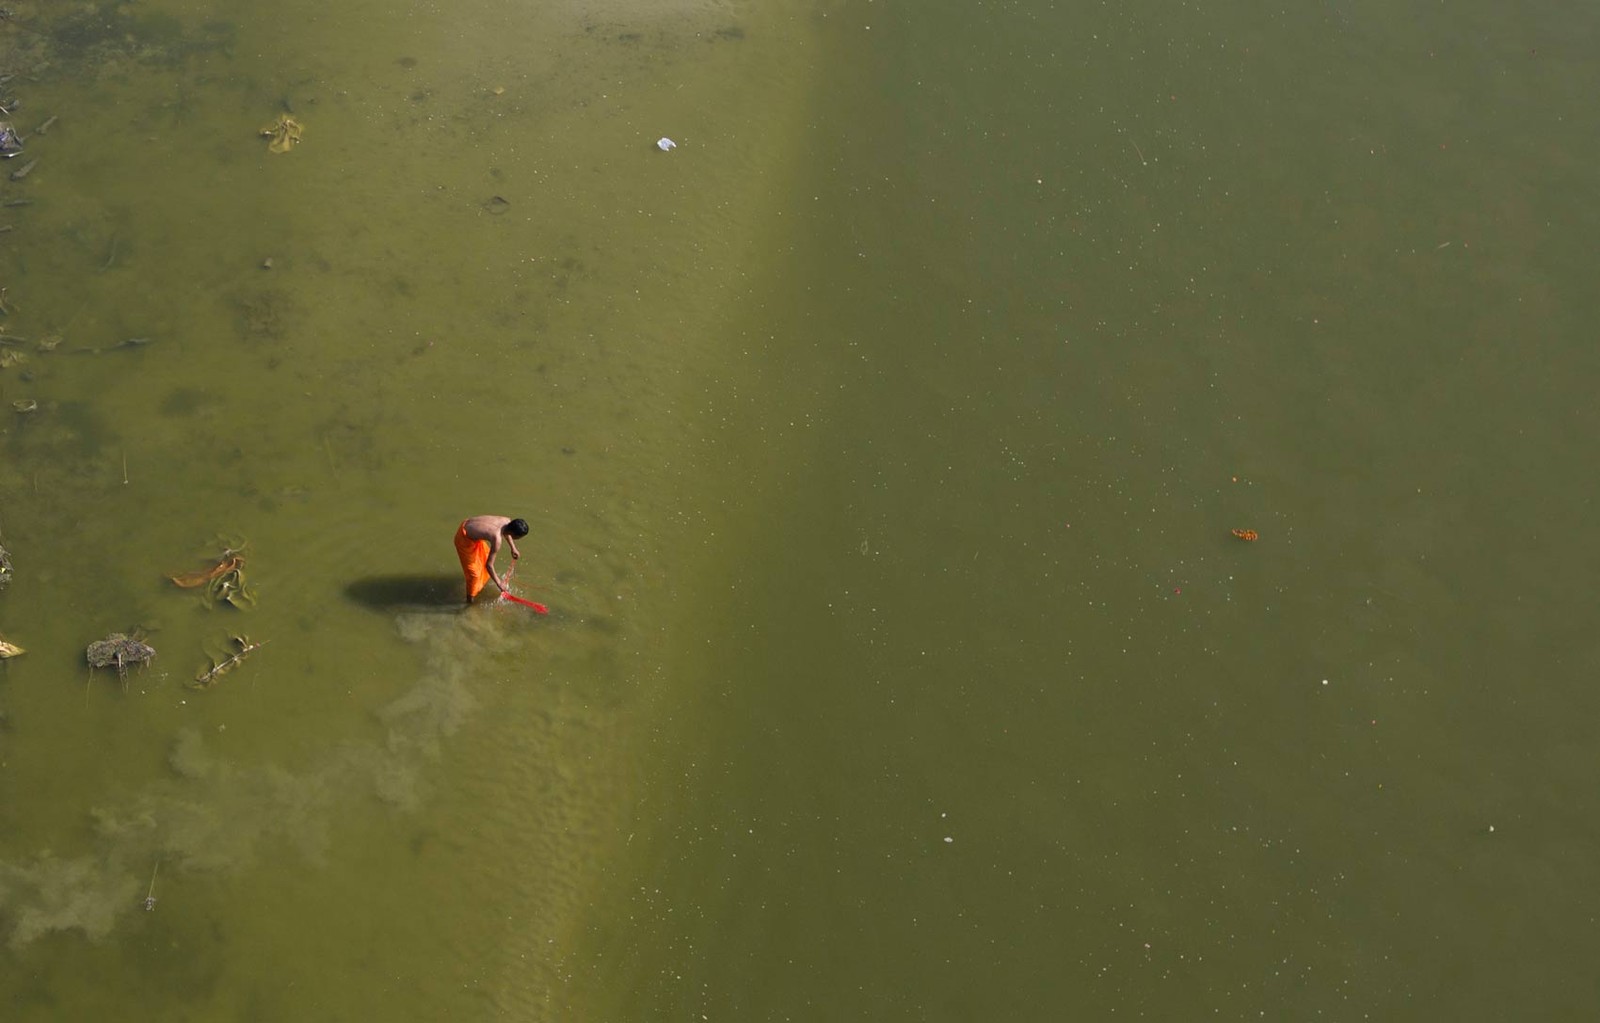 Poluição está matando o sagrado rio Ganges e intoxica os devotos hindus